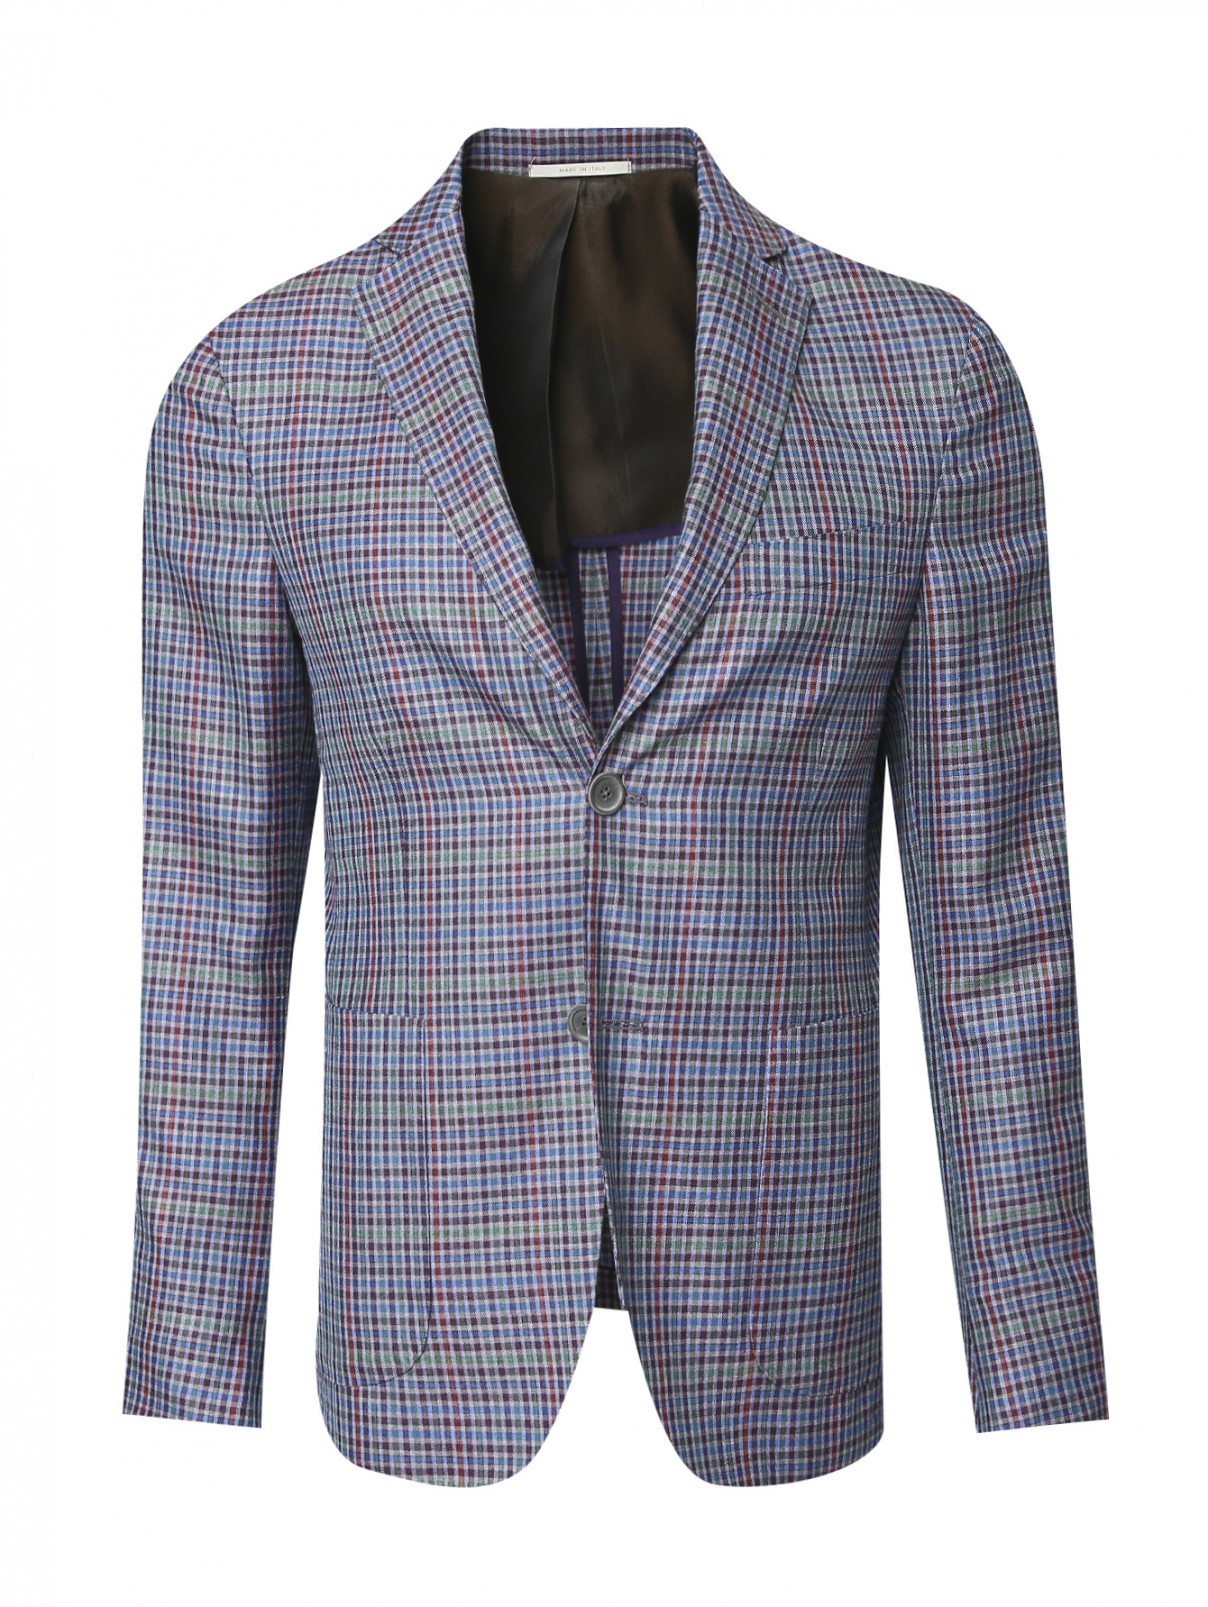 Пиджак однобортный из шерсти и шелка с узором "клетка" Pal Zileri  –  Общий вид  – Цвет:  Фиолетовый